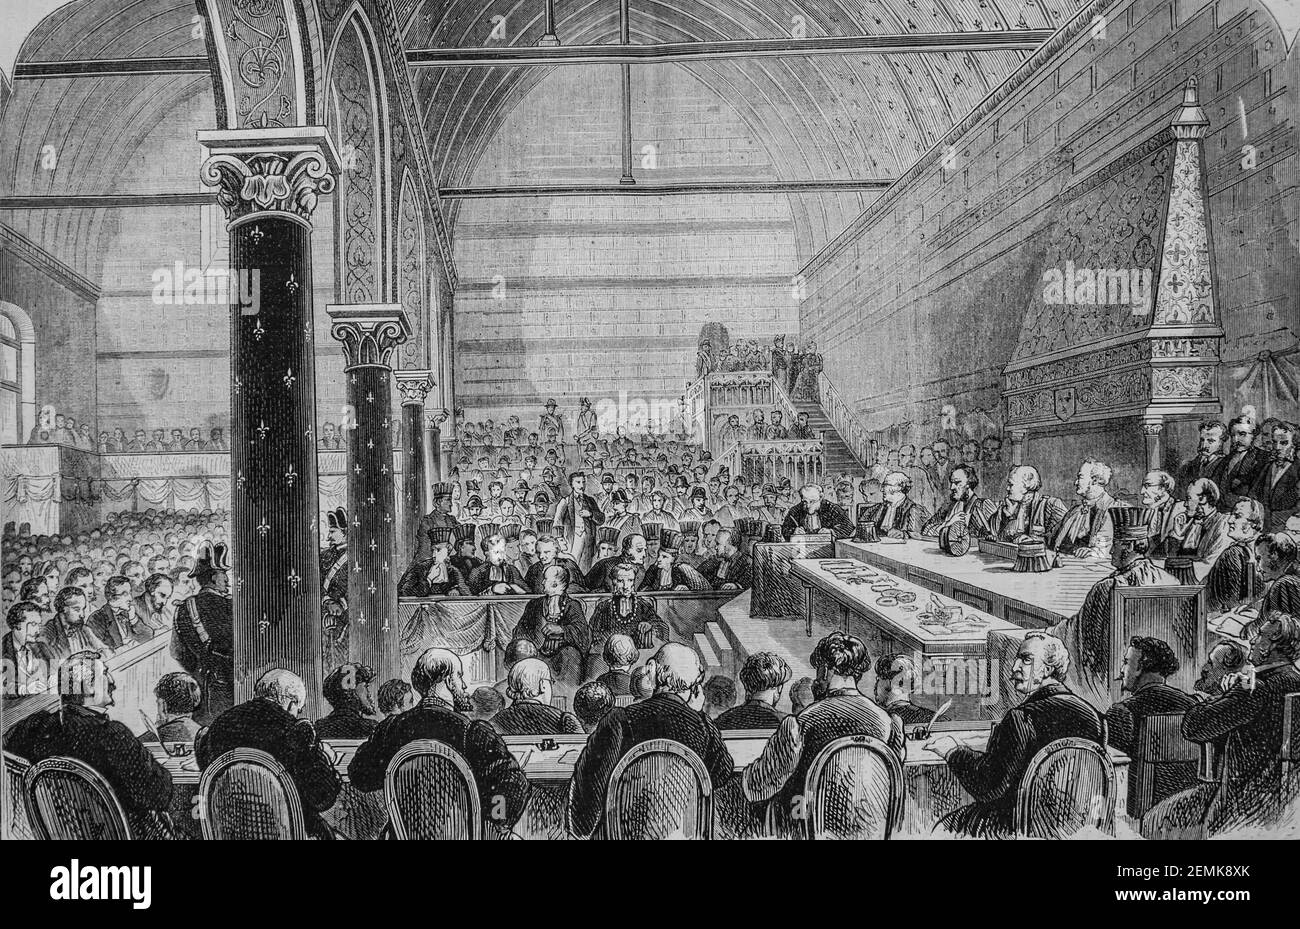 blois, audience de la haute cour de justice,dans la salle des etats, l'univers illustre,editeur michel levy 1870 Stock Photo